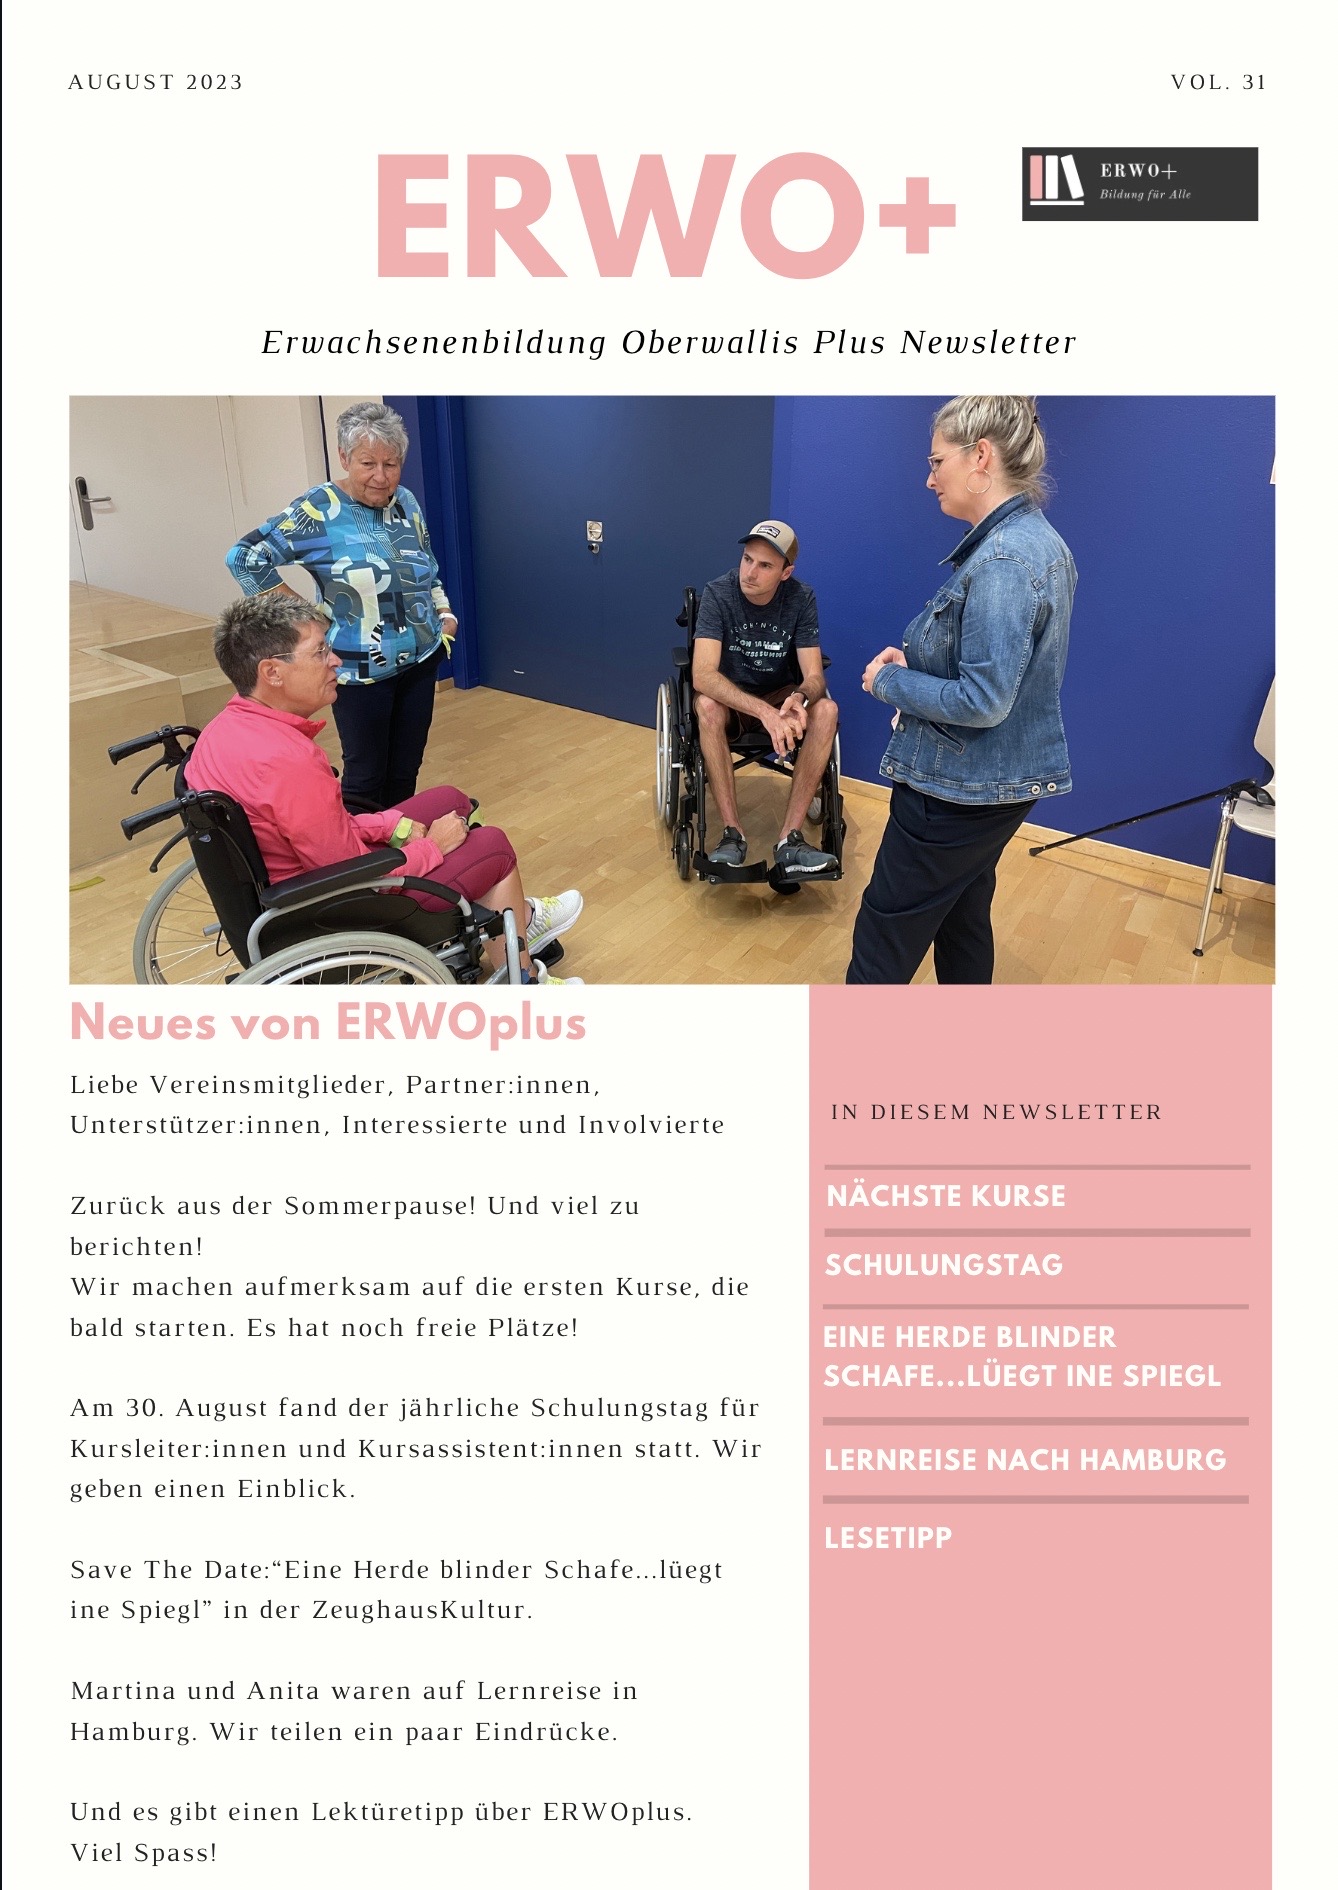 Coverbild des Newsletters August 2023. Das Bild ist mit der PDF Datei des Newsletters verlinkt. Auf dem Titelbild ist ein Foto von zwei Personen im Rollstuhl und zwei stehenden Personen.